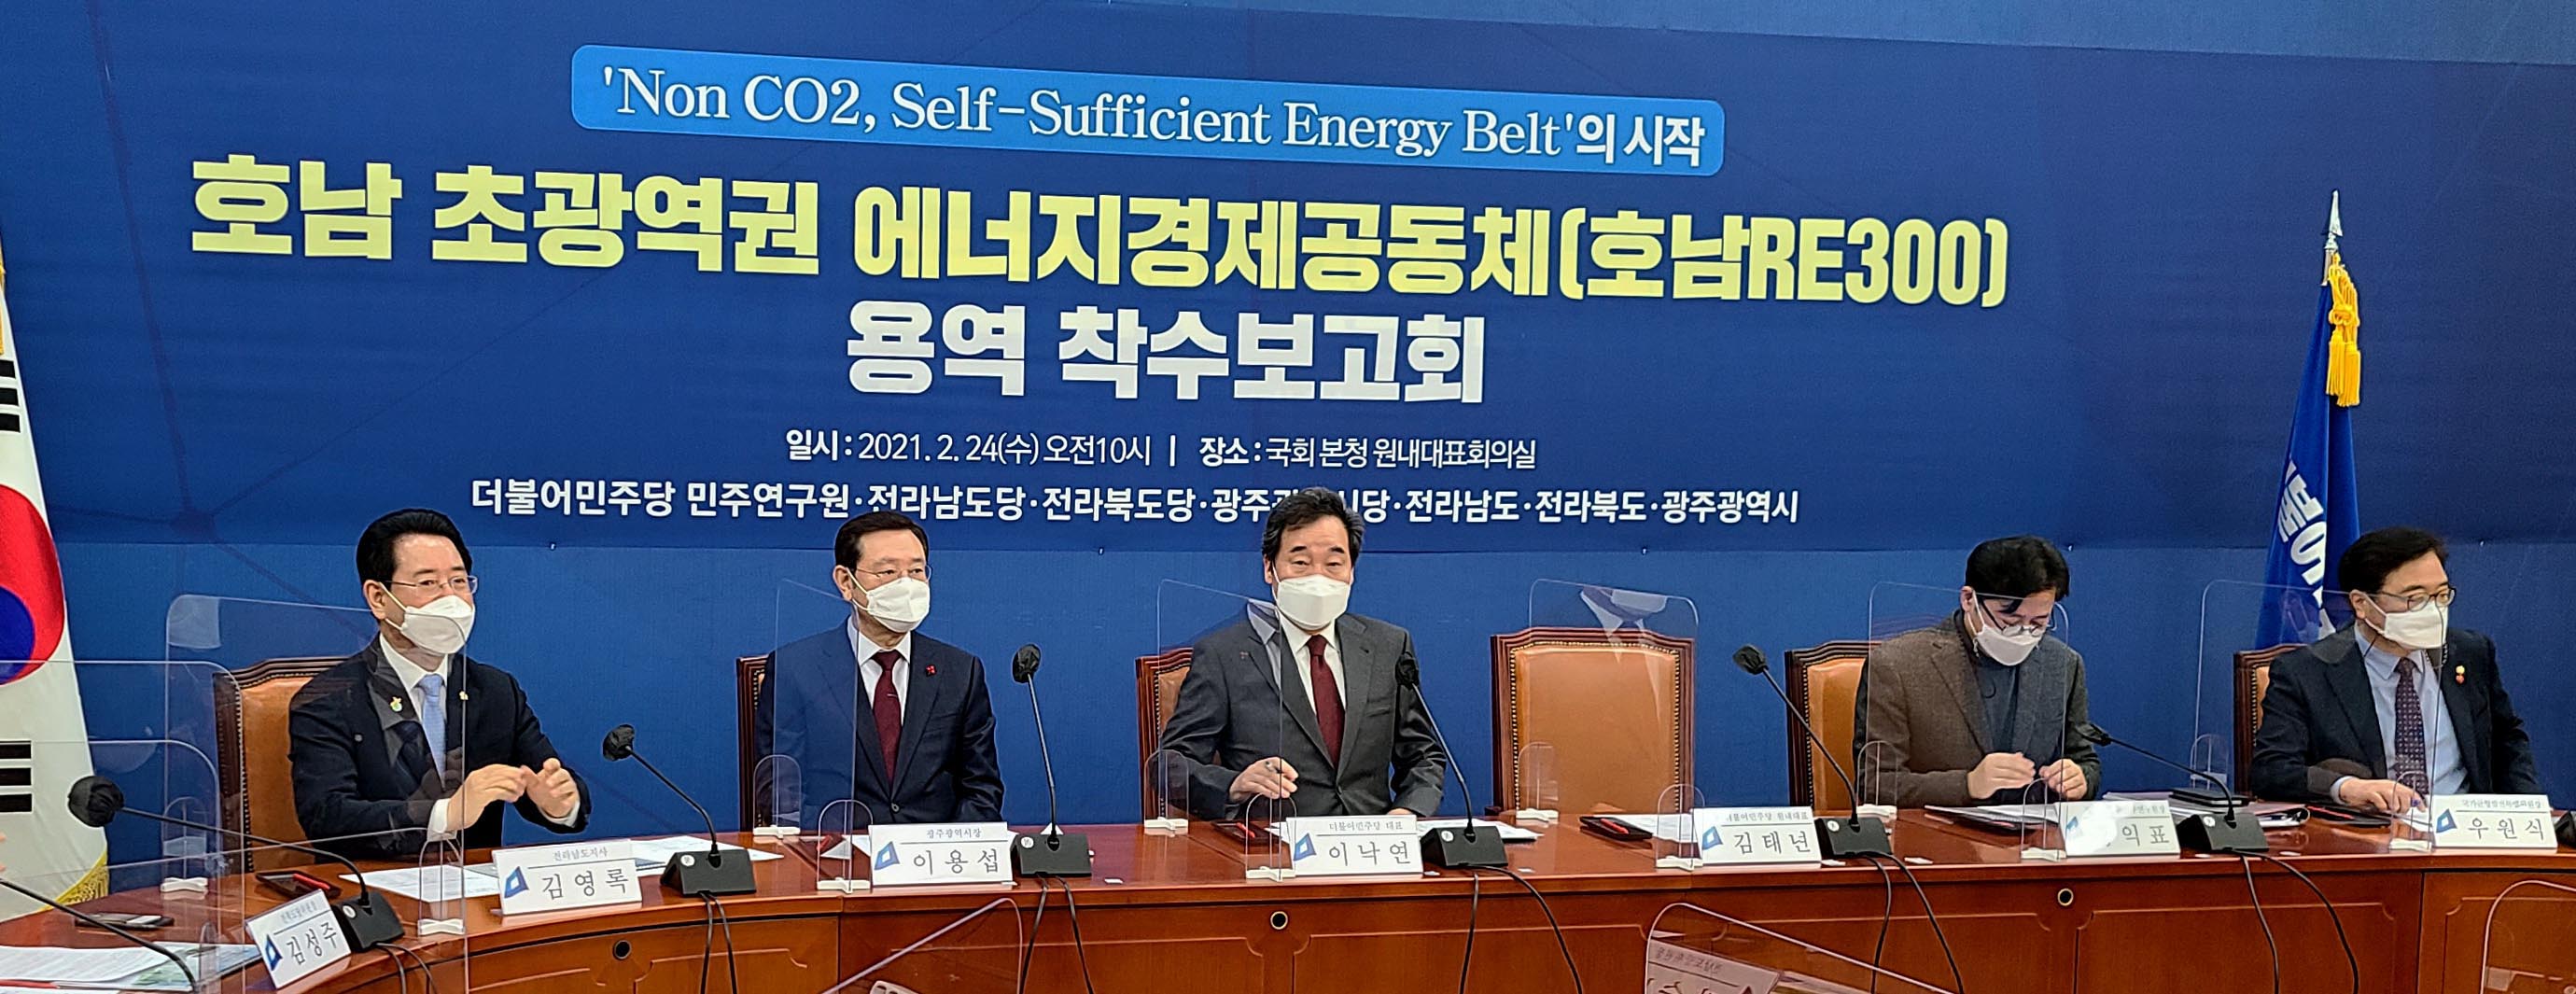 호남 초광역권 에너지경제공동체 '호남RE300' 용역 착수보고회1